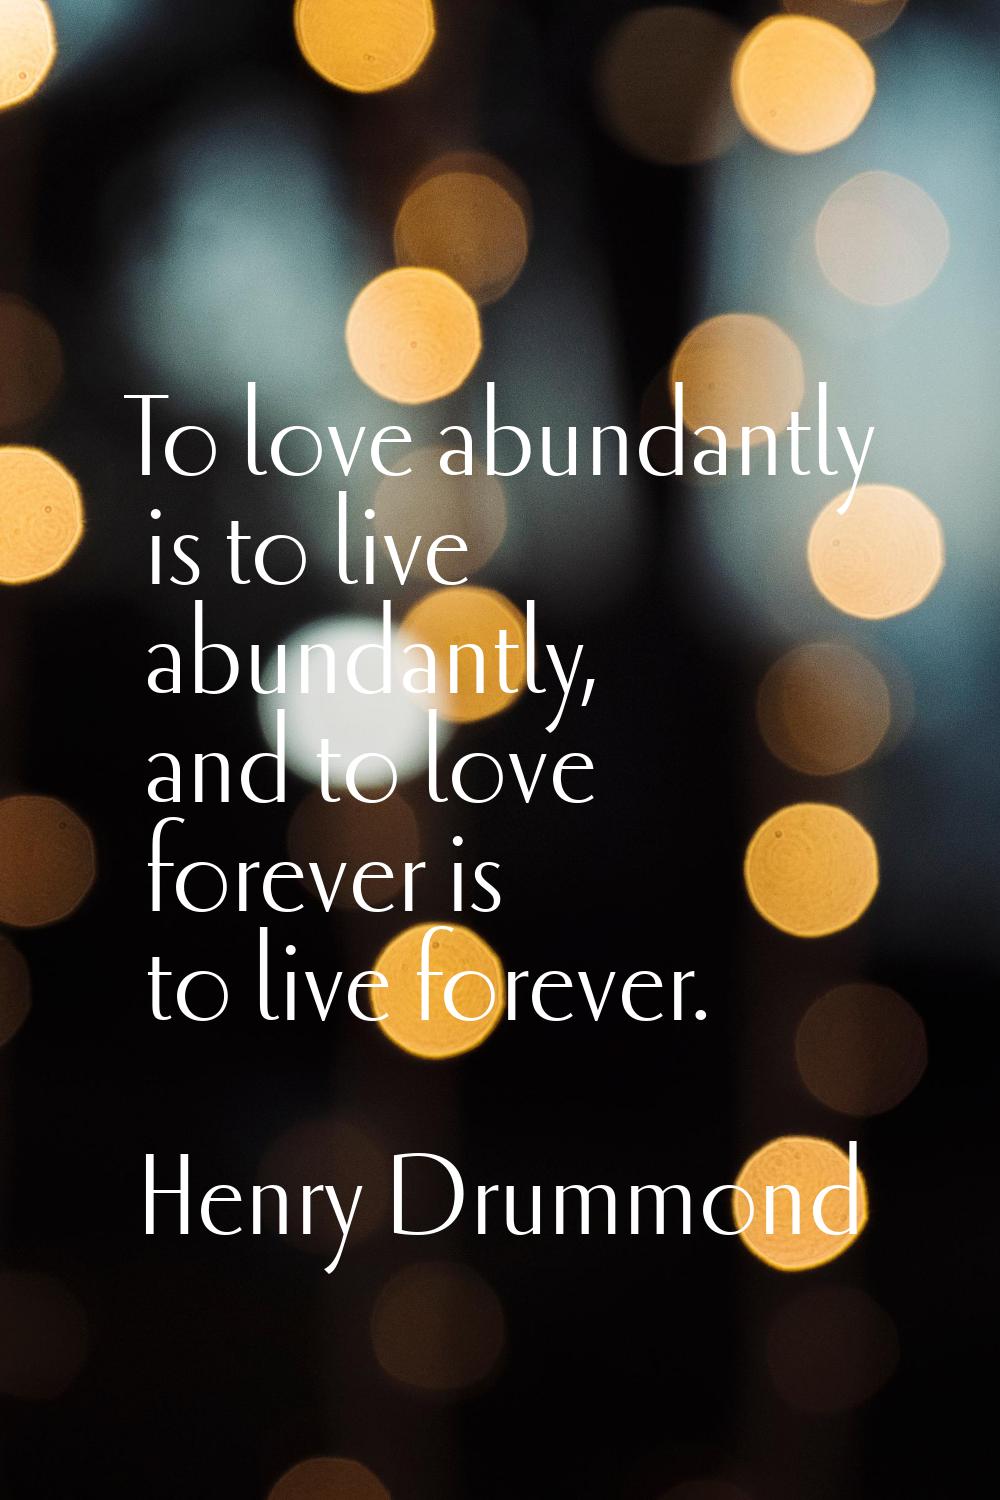 To love abundantly is to live abundantly, and to love forever is to live forever.